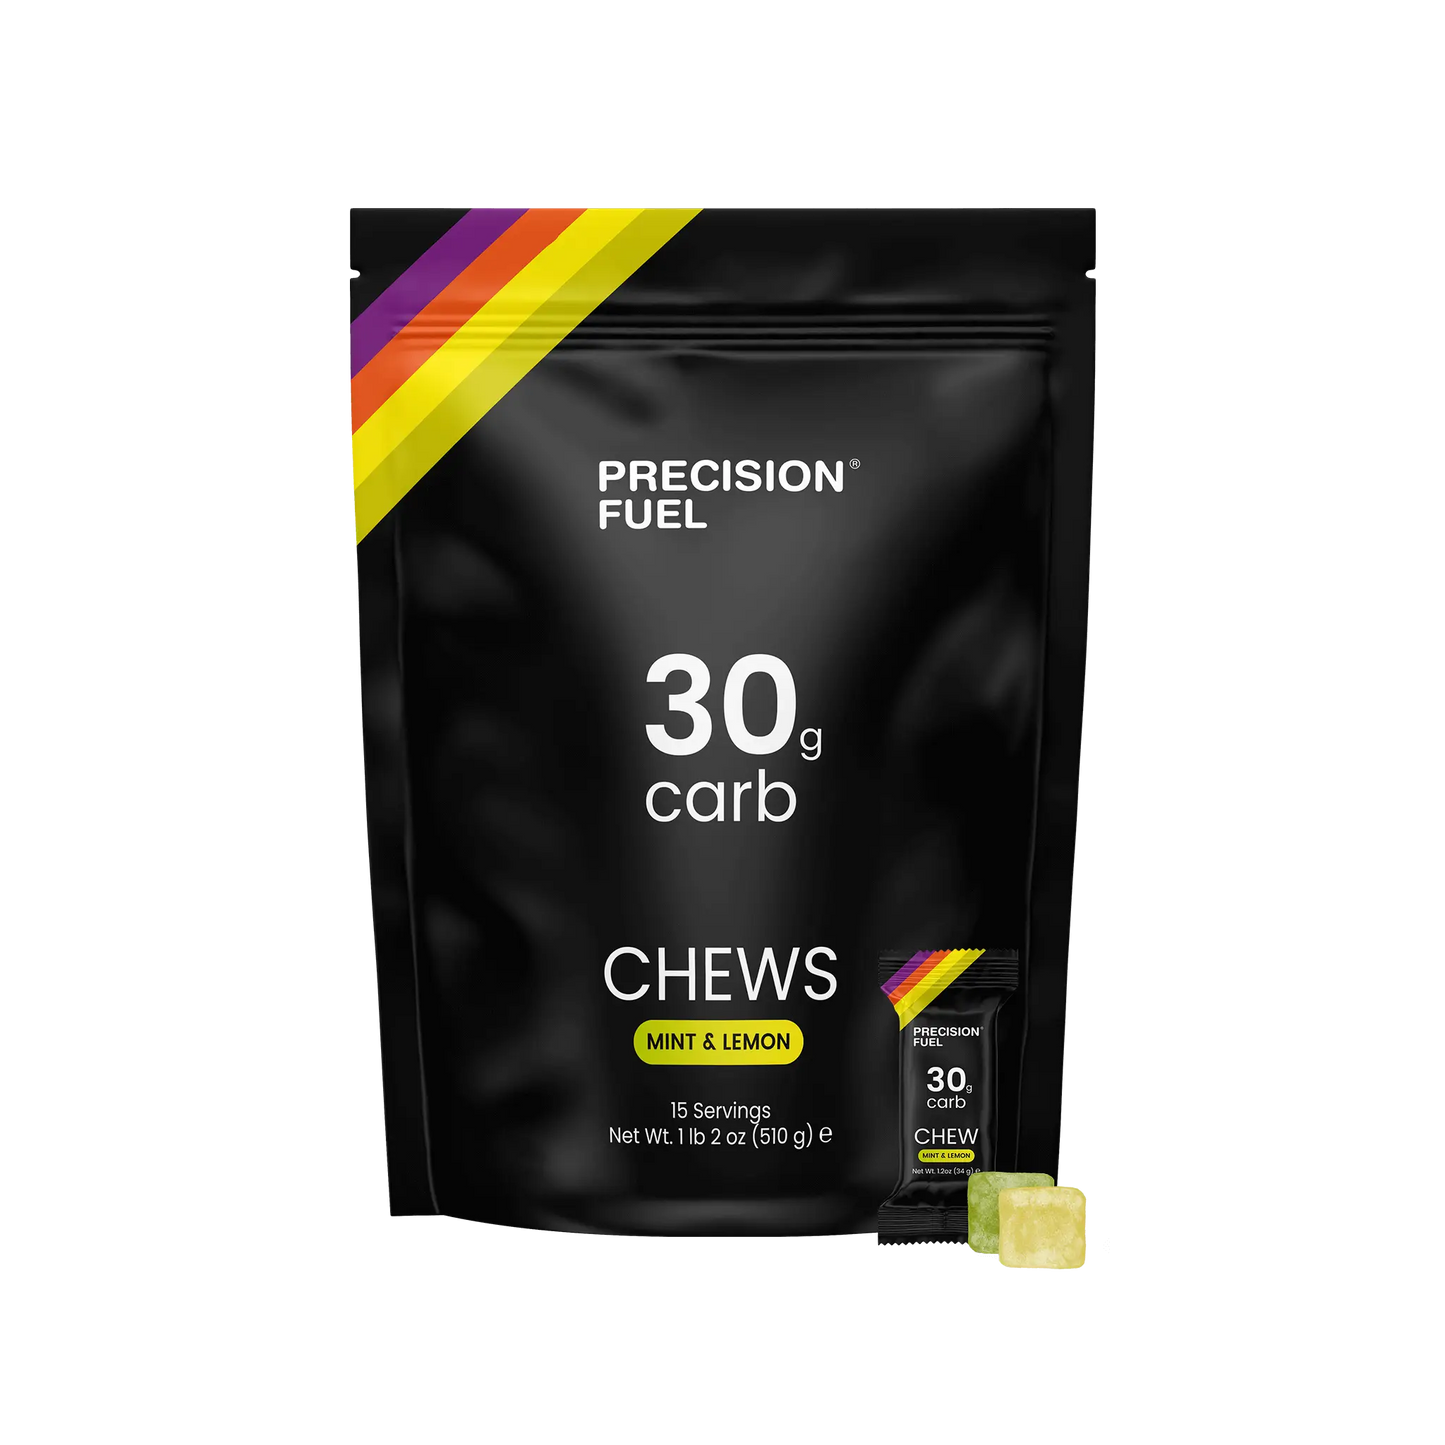 Precision Fuel 30 Chew - Mint & Lemon - Bag of 15 packets